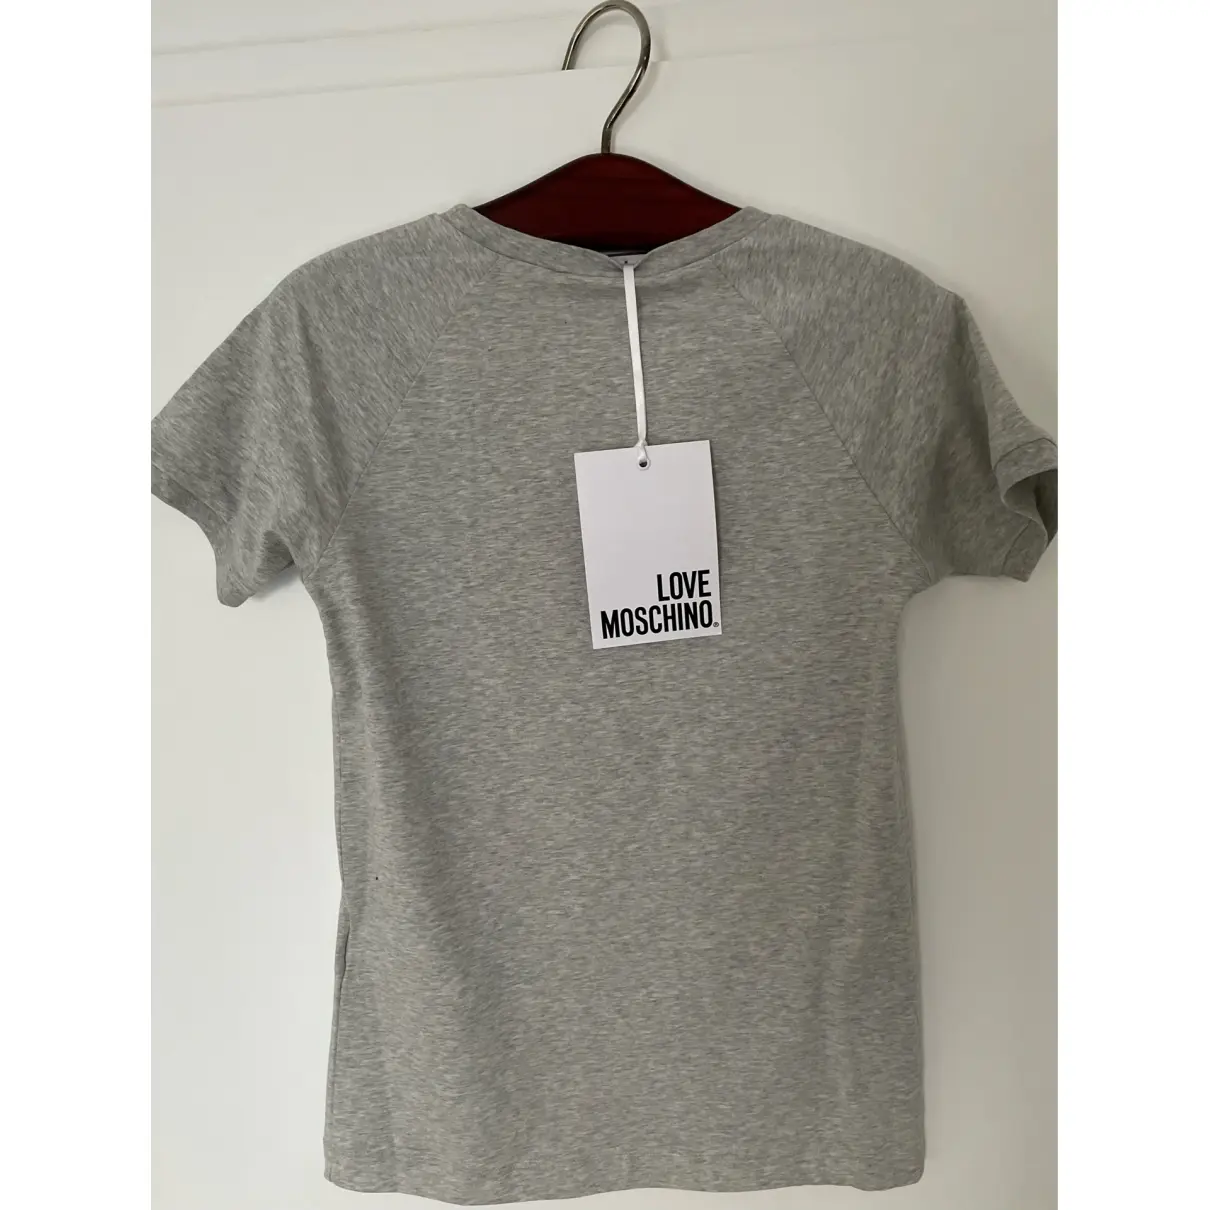 Buy Moschino Love T-shirt online